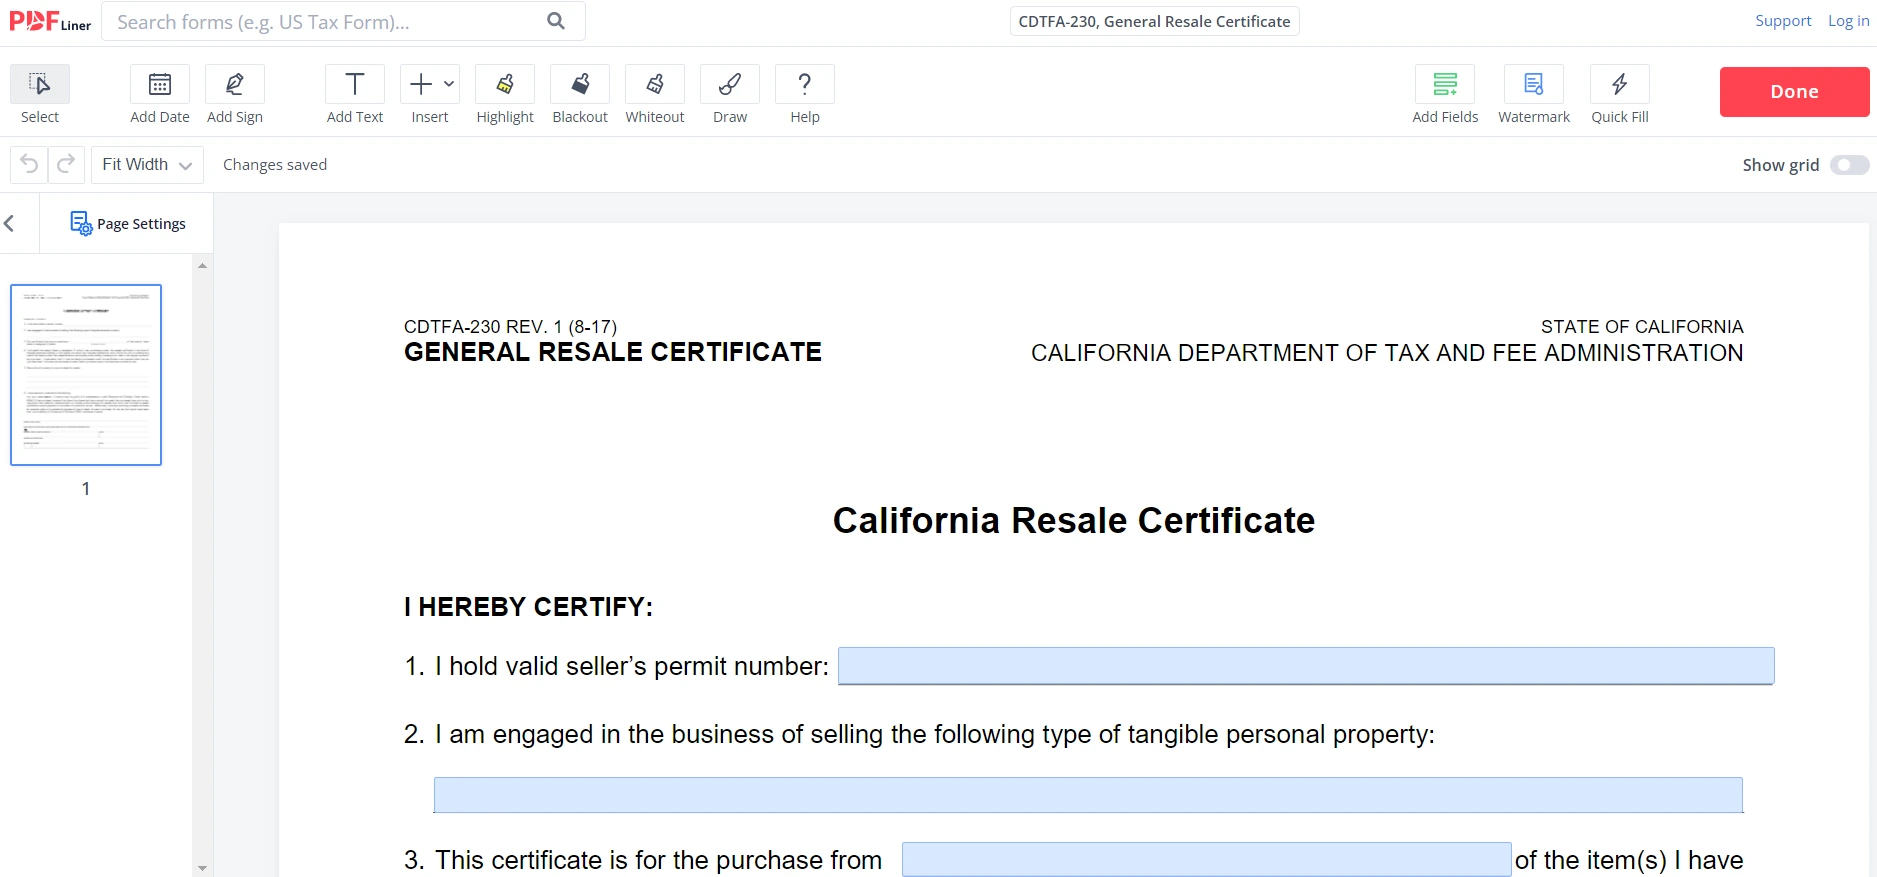 General Resale Certificate on PDFLiner